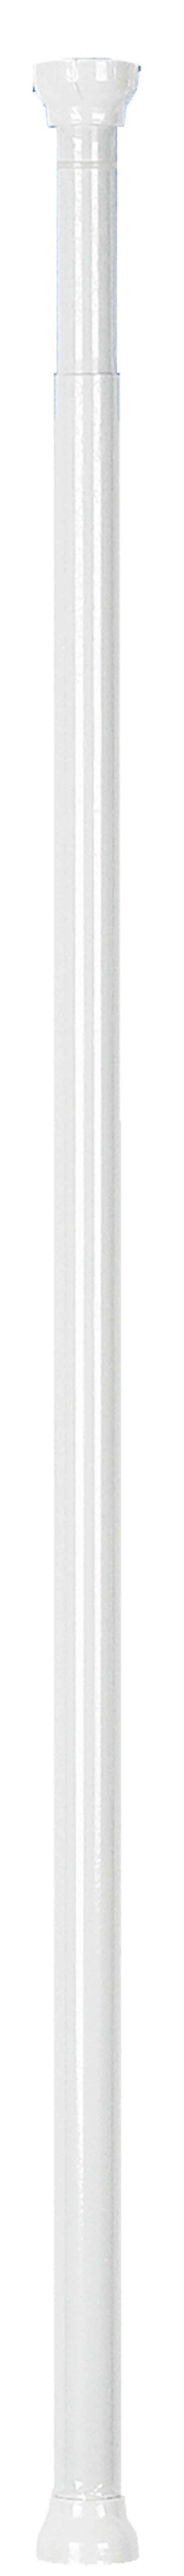 Duschvorhangstange KRETA, spirella, geklemmt, zum Einspannen, ausdrehbar, stufenlos verstellbare Teleskopstange zum Einspannen - kein Bohren - kratzfestes Aluminium, weiß glänzend, Ø 21 mm, Verstellbereich 75 - 125 cm